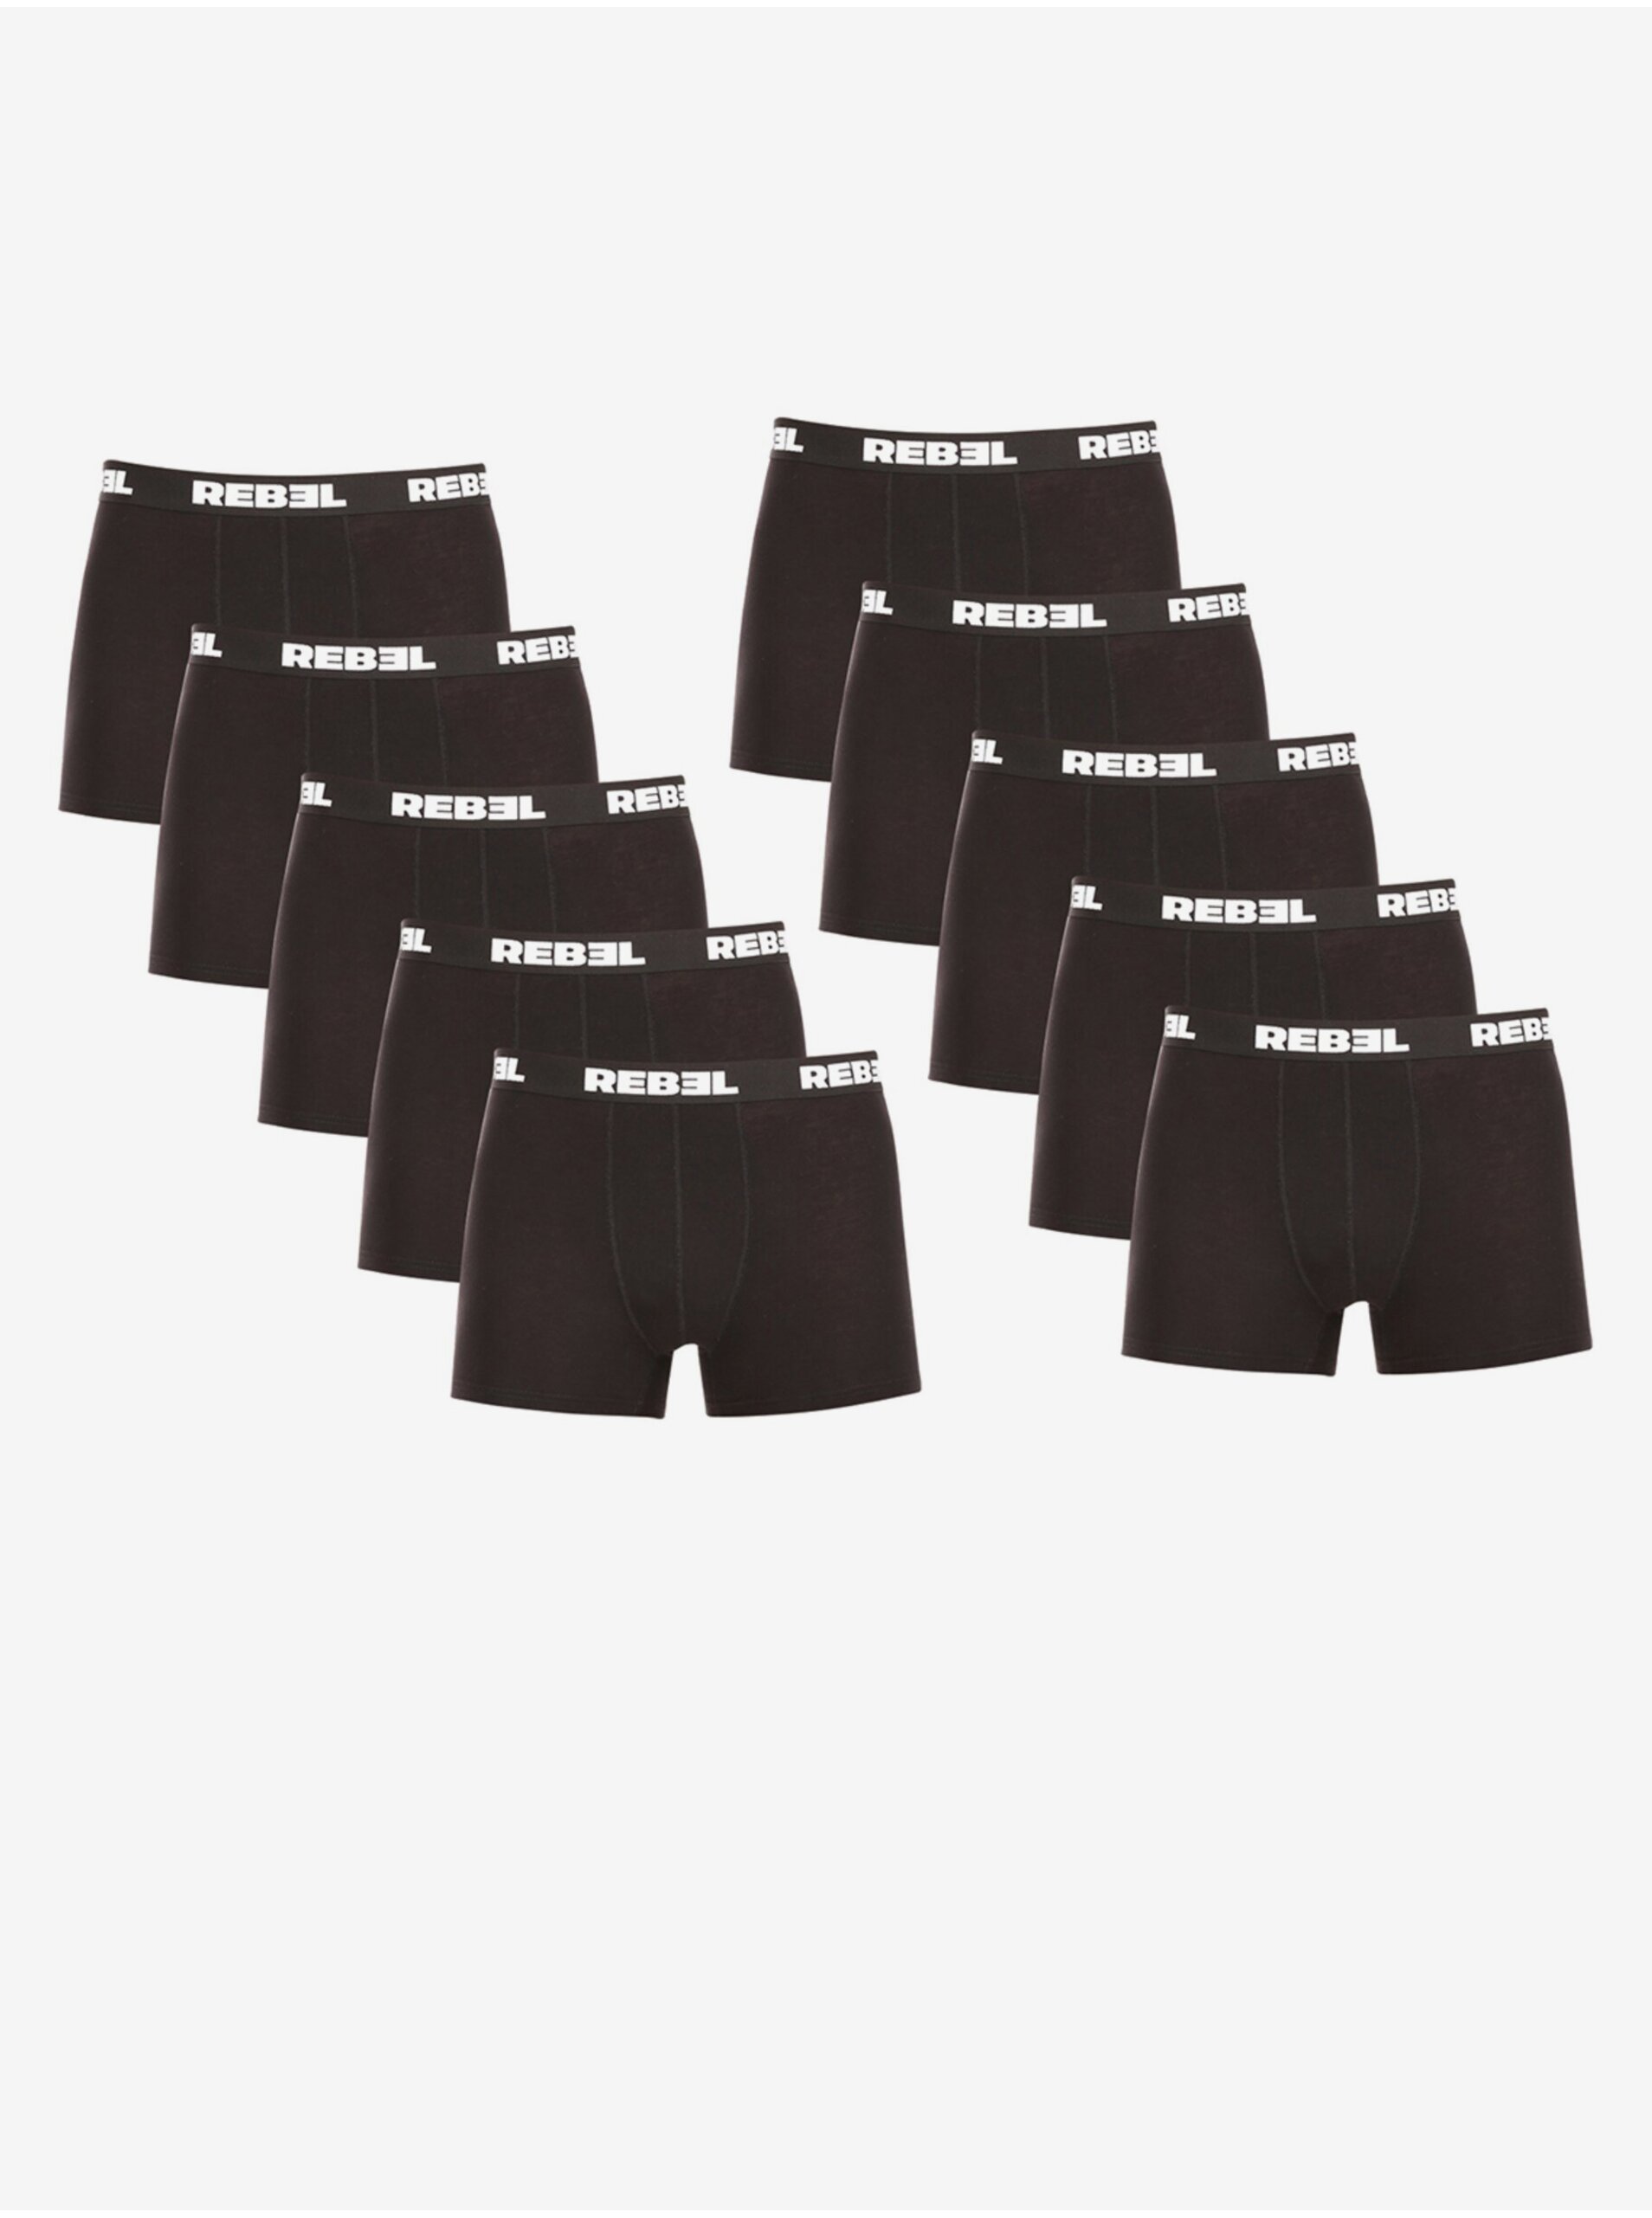 E-shop Súprava desiatich pánskych boxeriek v čiernej farbe Nedeto Rebel